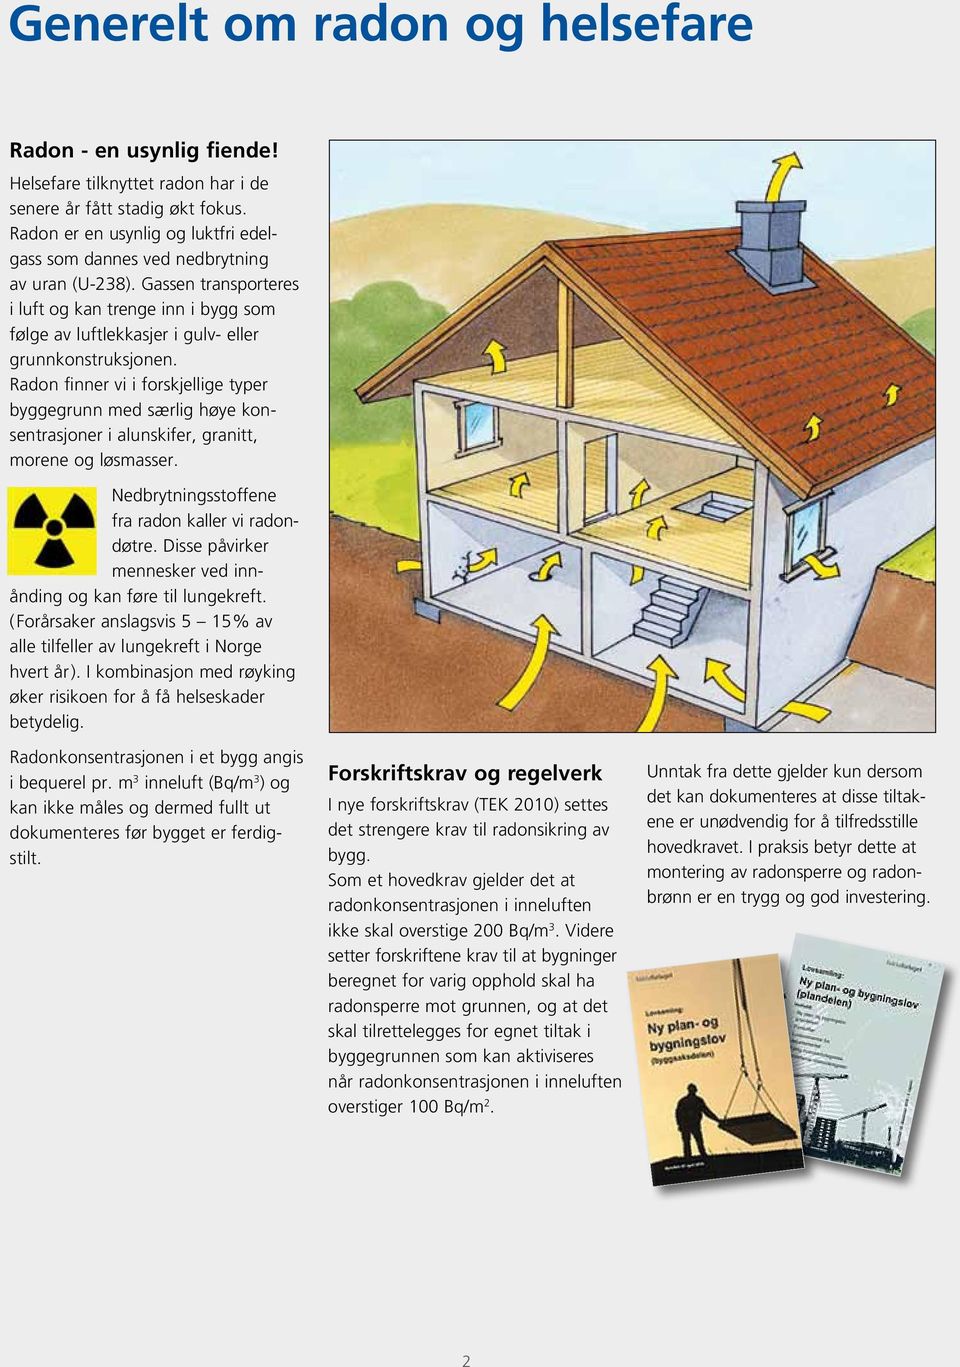 Radon finner vi i forskjellige typer byggegrunn med særlig høye konsentrasjoner i alunskifer, granitt, morene og løsmasser. Nedbrytningsstoffene fra radon kaller vi radondøtre.